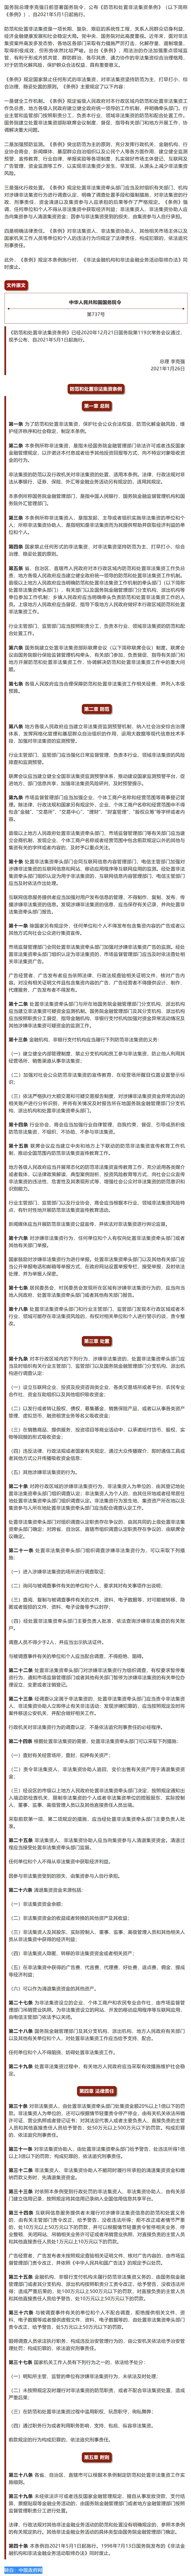 普法宣传 _ 李克强签署国务院令 公布《防范和处置非法集资条例》.png